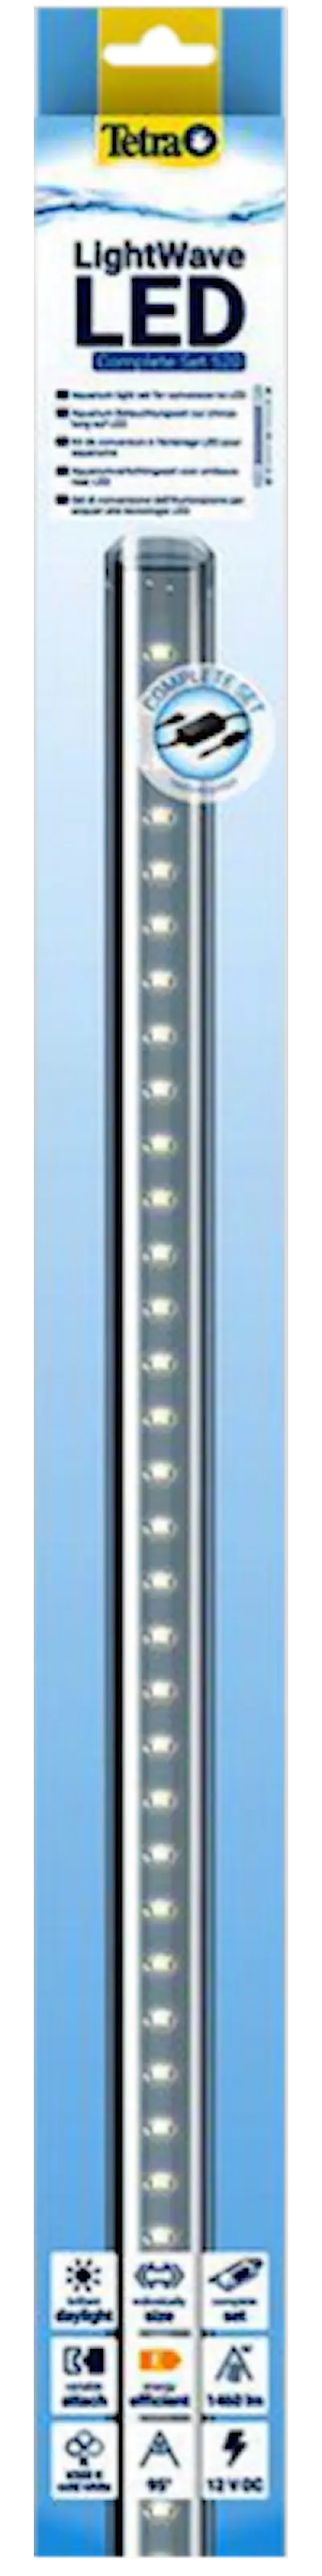 LightWave LED Single Light, 830 - 910 mm